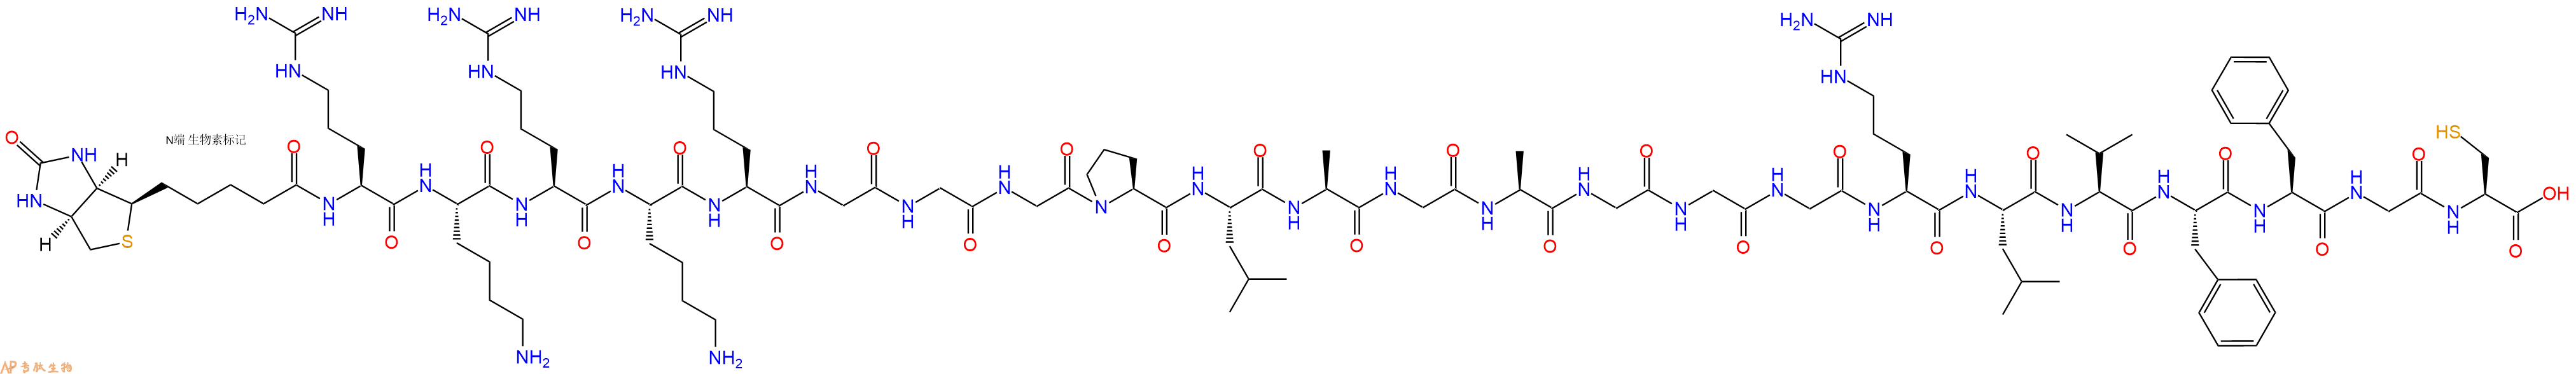 专肽生物产品Biotin-Arg-Lys-Arg-Lys-Arg-Gly-Gly-Gly-Pro-Leu-Ala